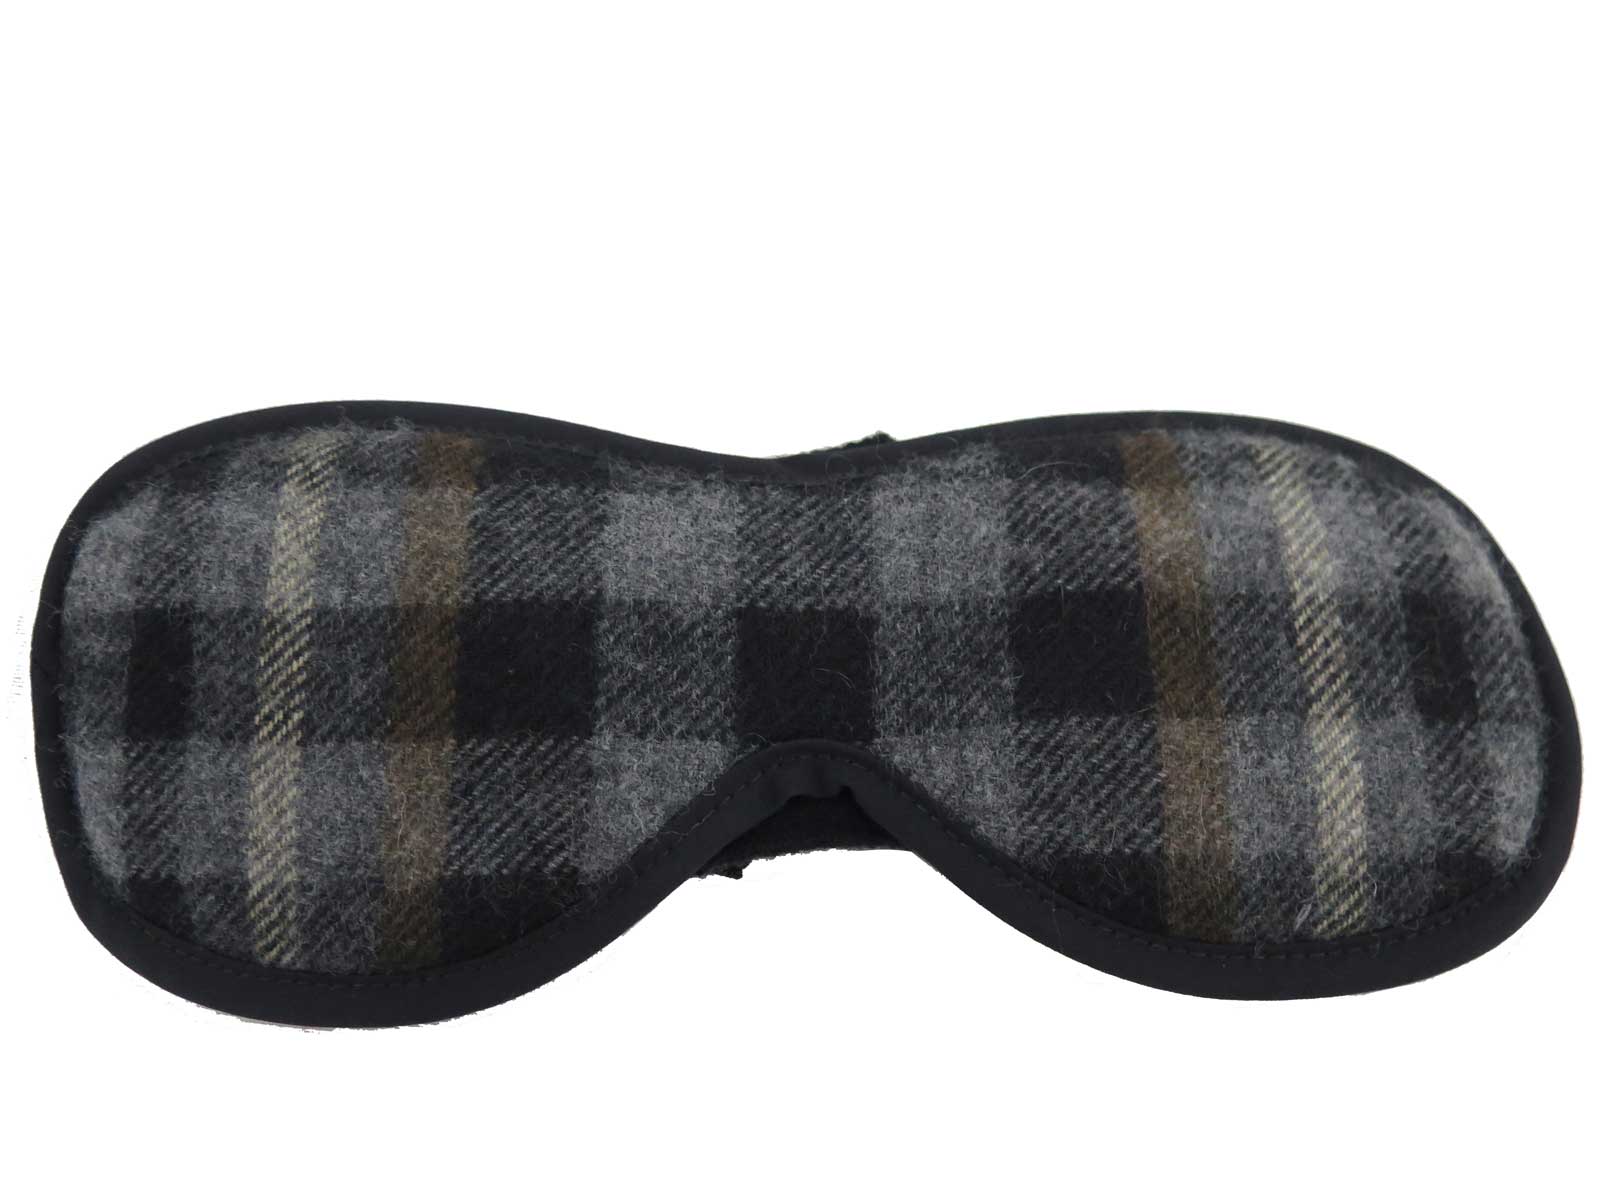 Auth Louis Vuitton Travel Set Eye Mask/Pillow/Socks Gray/Black/Brown Wool e40601 | eBay